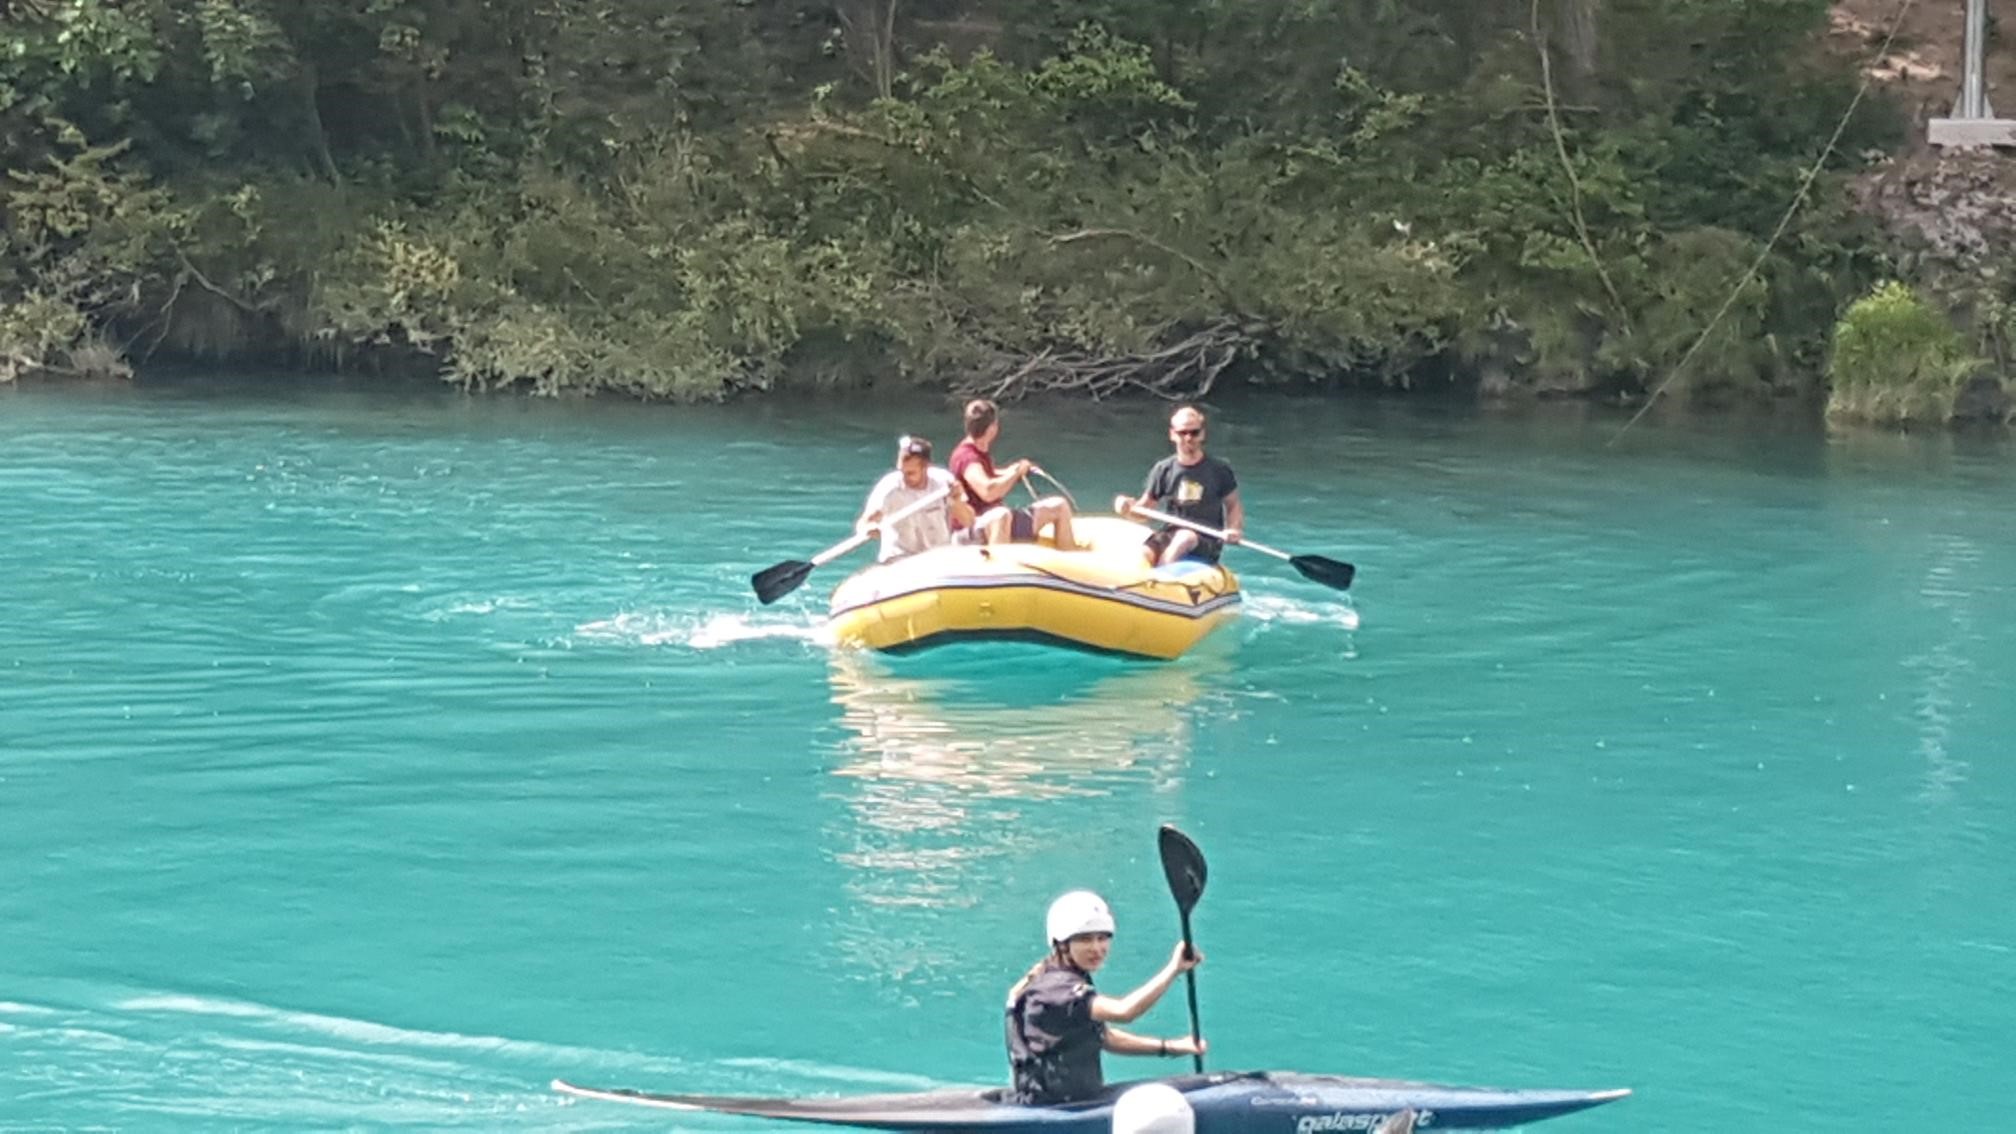 Trije moški sedijo na gumijastem čolnu in veslajo